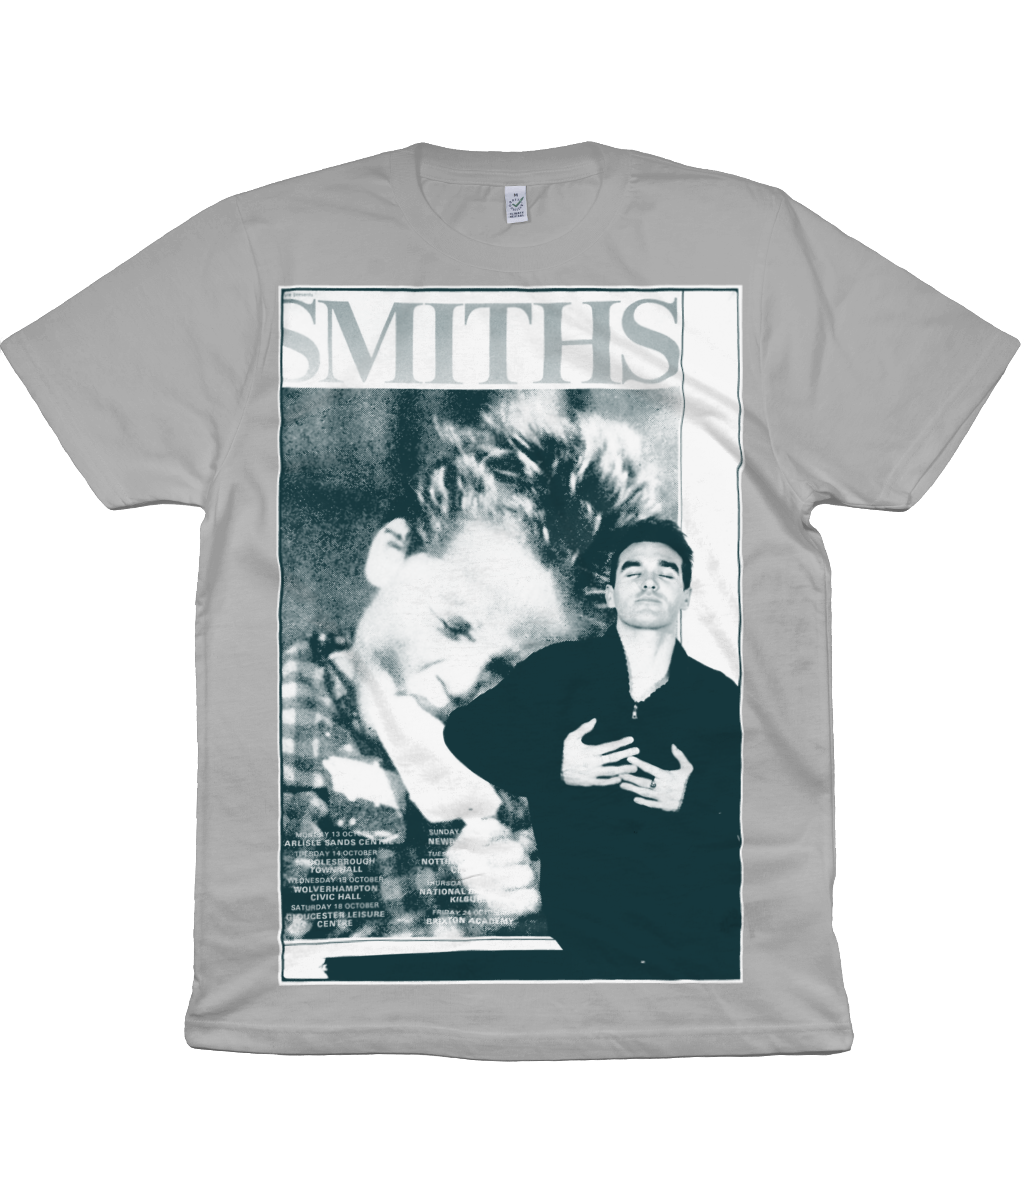 The Smiths - Rough Trade Promo - 1986 - Tinted